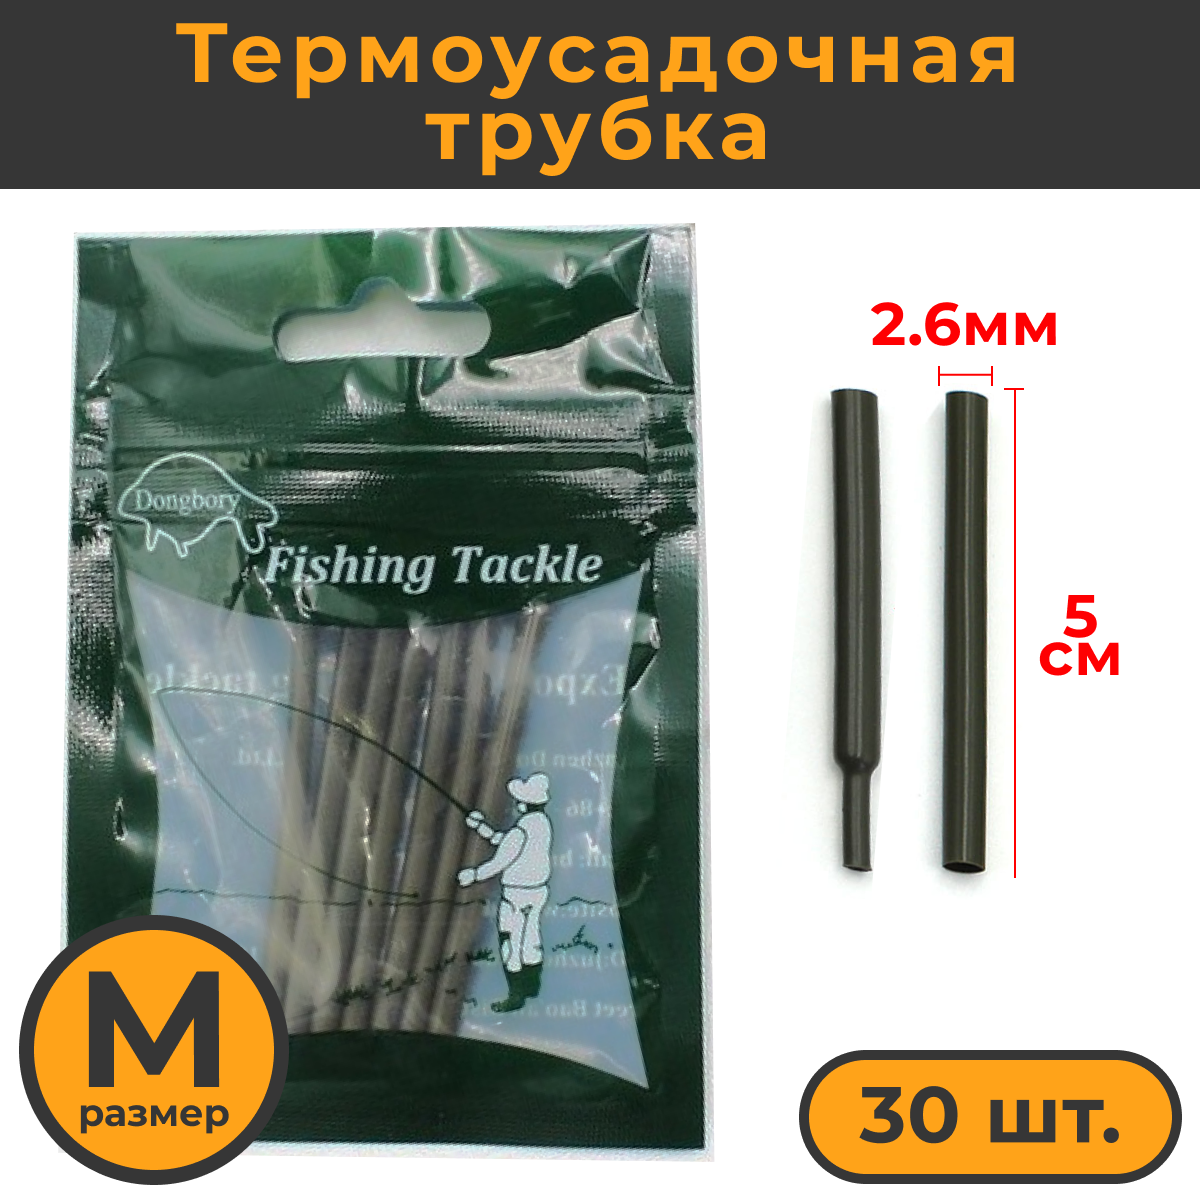 Термоусадка для карповых поводков 30шт размер M (26мм) / Термоусадочная трубка рыболовная / термоусадочные трубки для рыбалки / Кембрики рыболовные